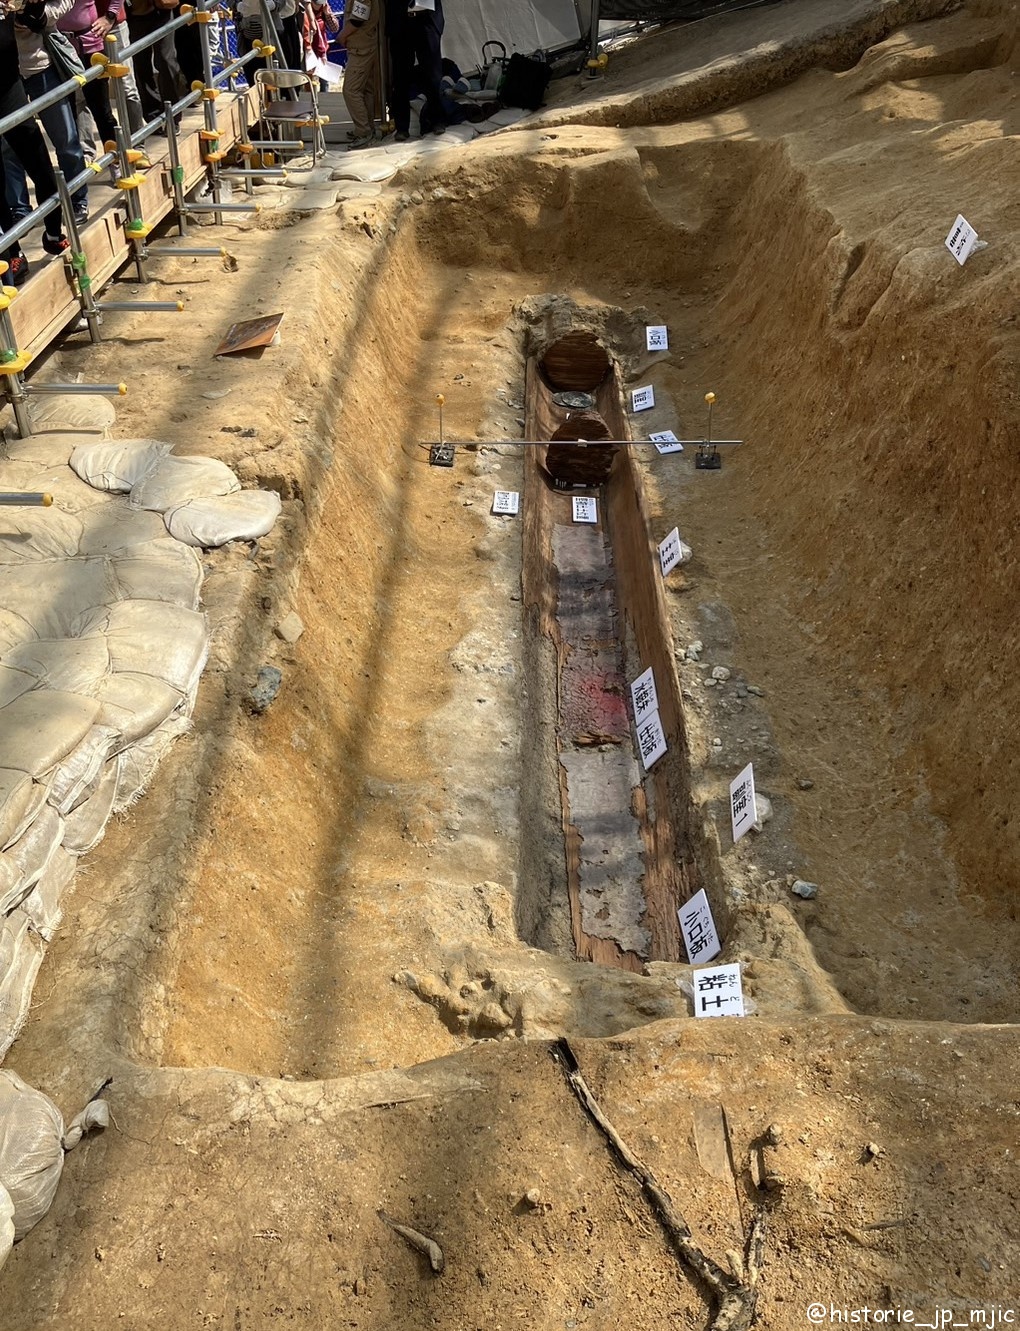 [奈良] 『奈良富雄丸山古墳の発掘調査（第7次）現地公開』国内最大の円墳調査現場を公開